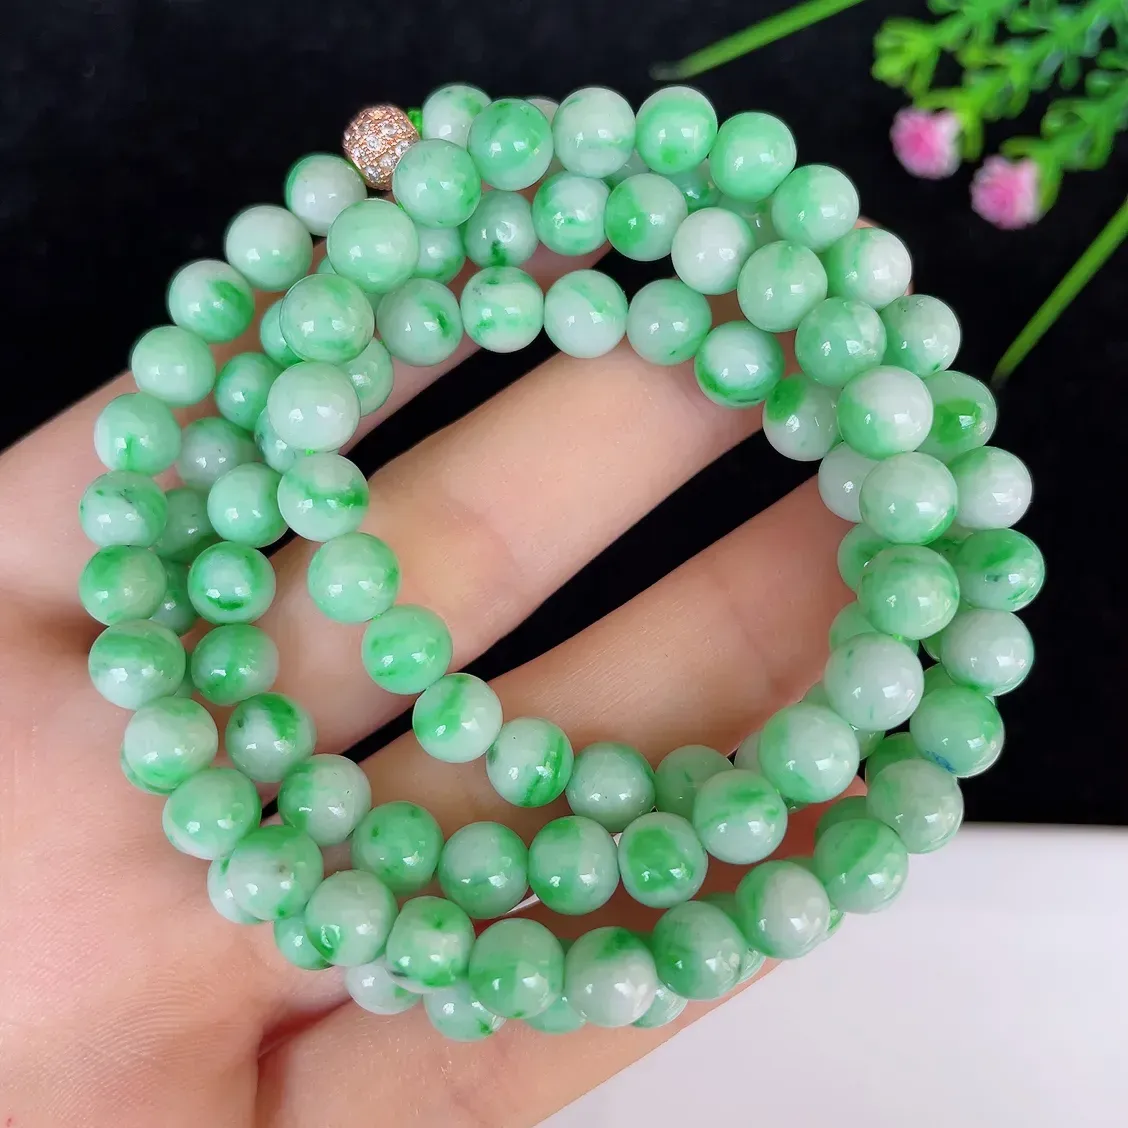 水润飘绿白底青圆珠翡翠项链#110-4519，天然翡翠A货，尺寸取一6.3mm，色泽鲜艳，绿色迷人，质地细腻，佩戴效果佳！！